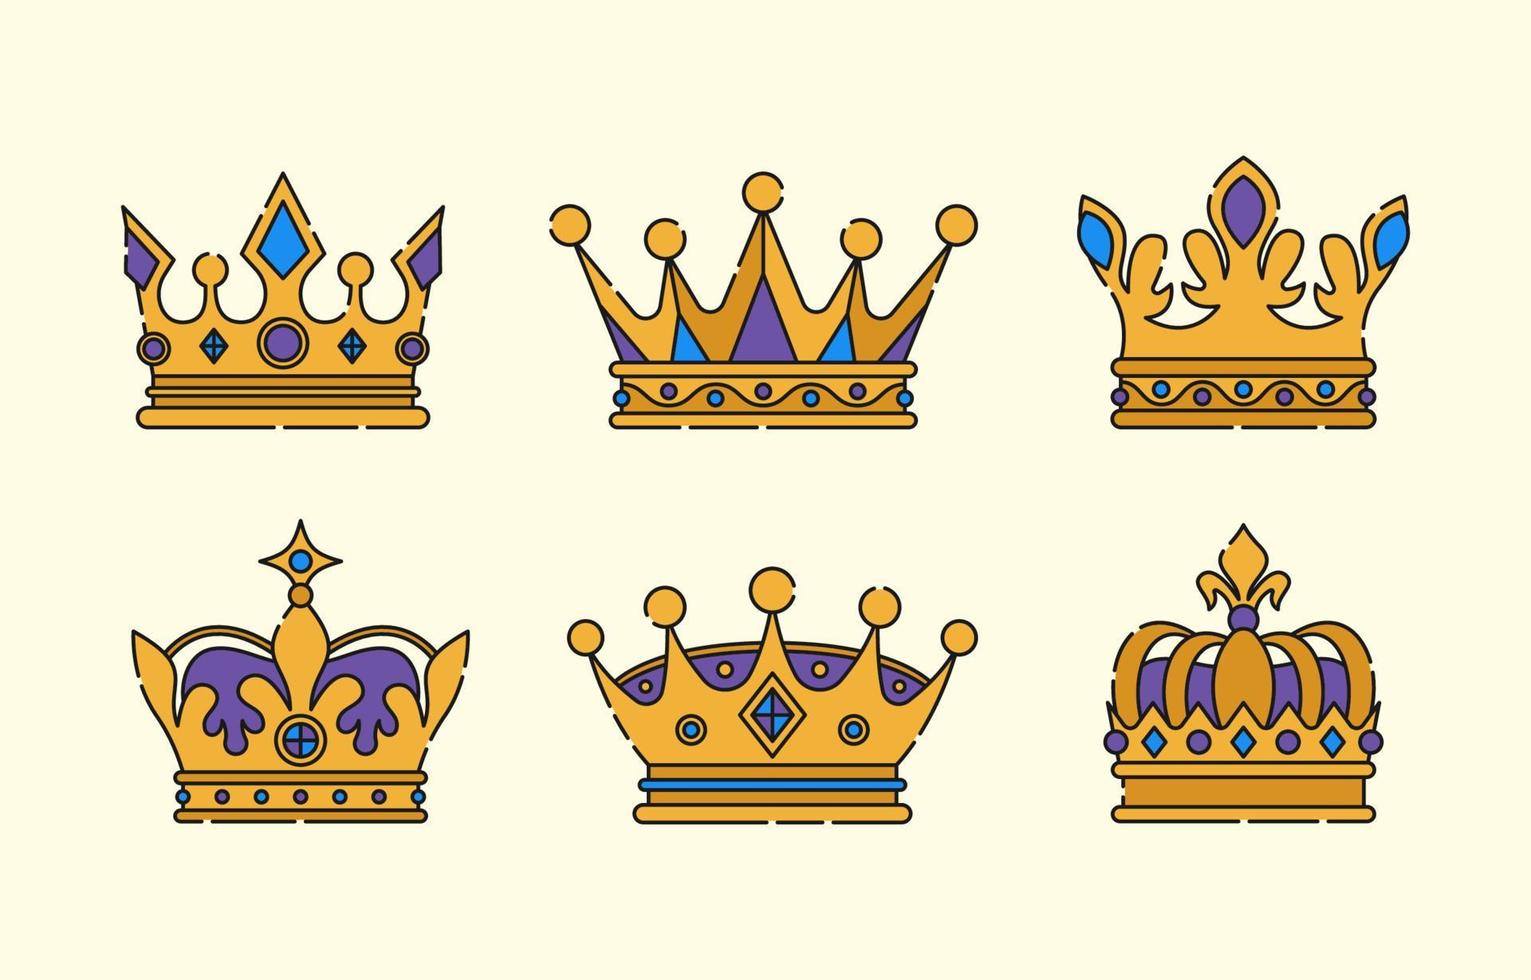 Crown Icon Set vector